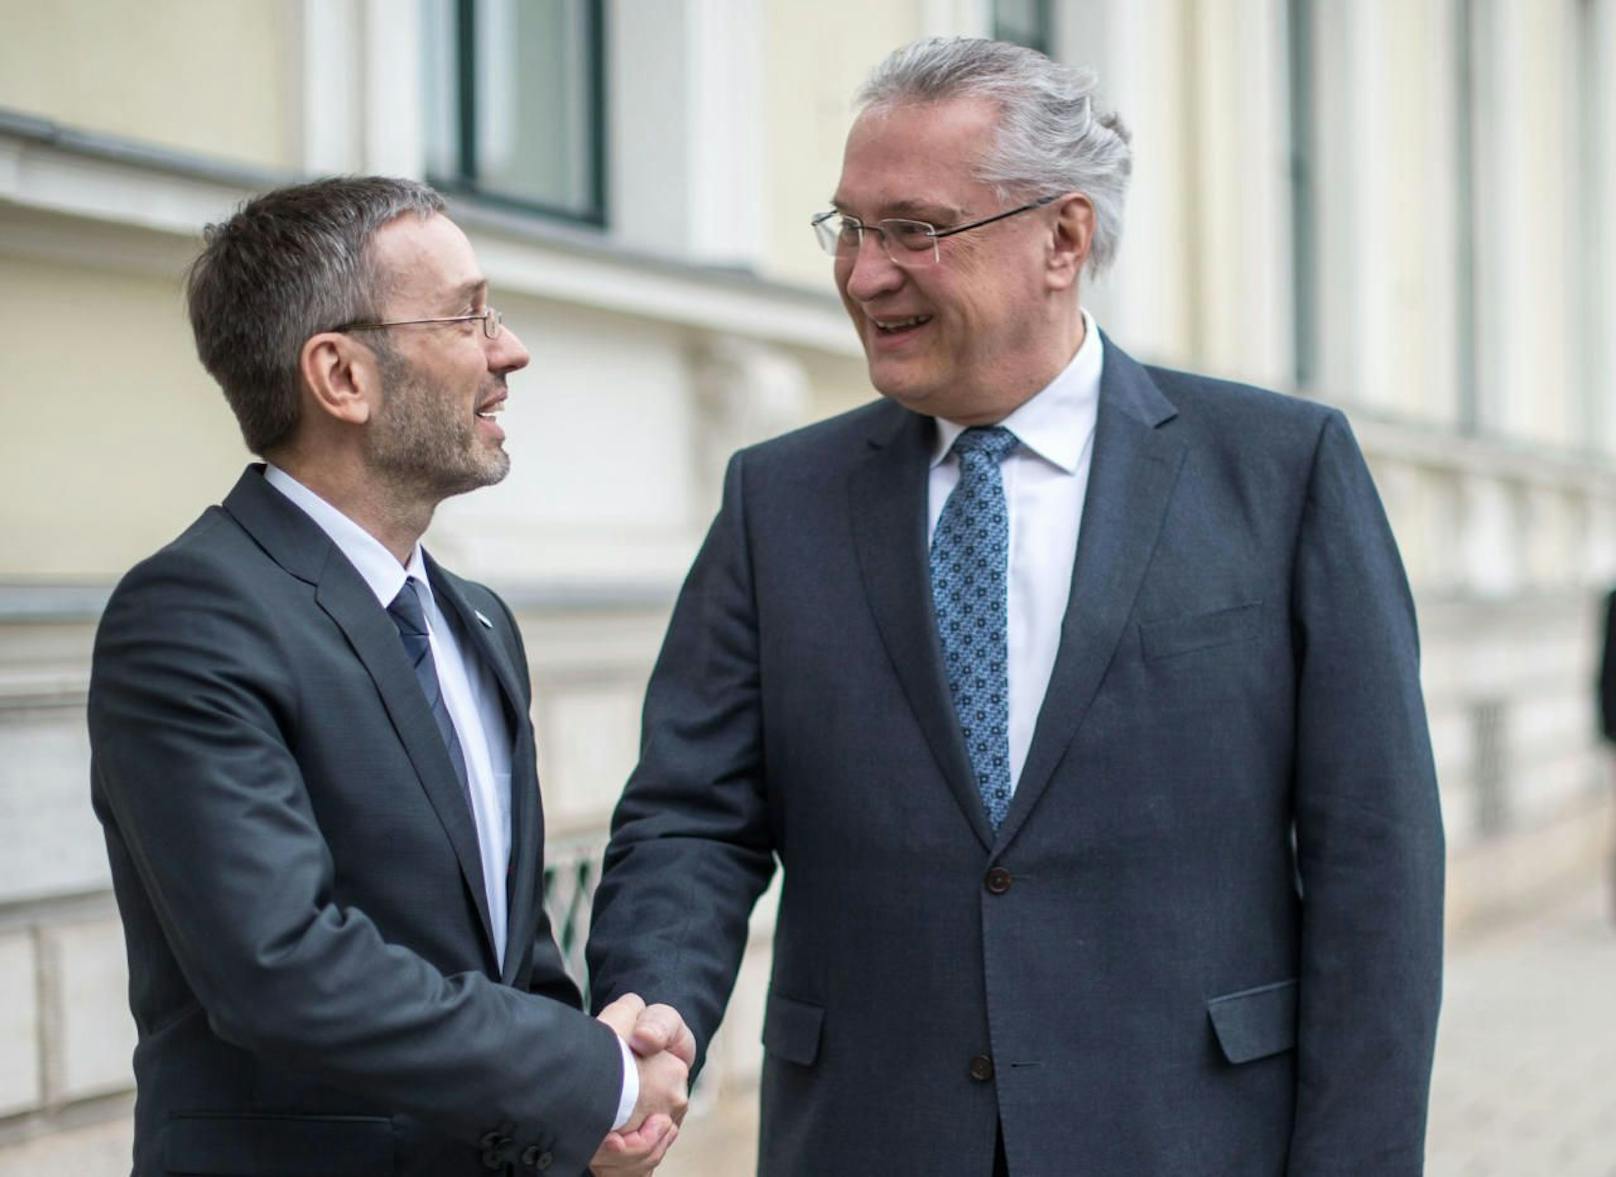 Innenminister Herbert Kickl (FPÖ) mit seinem bayrischen Amtskollegen Joachim Herrmann (CSU)